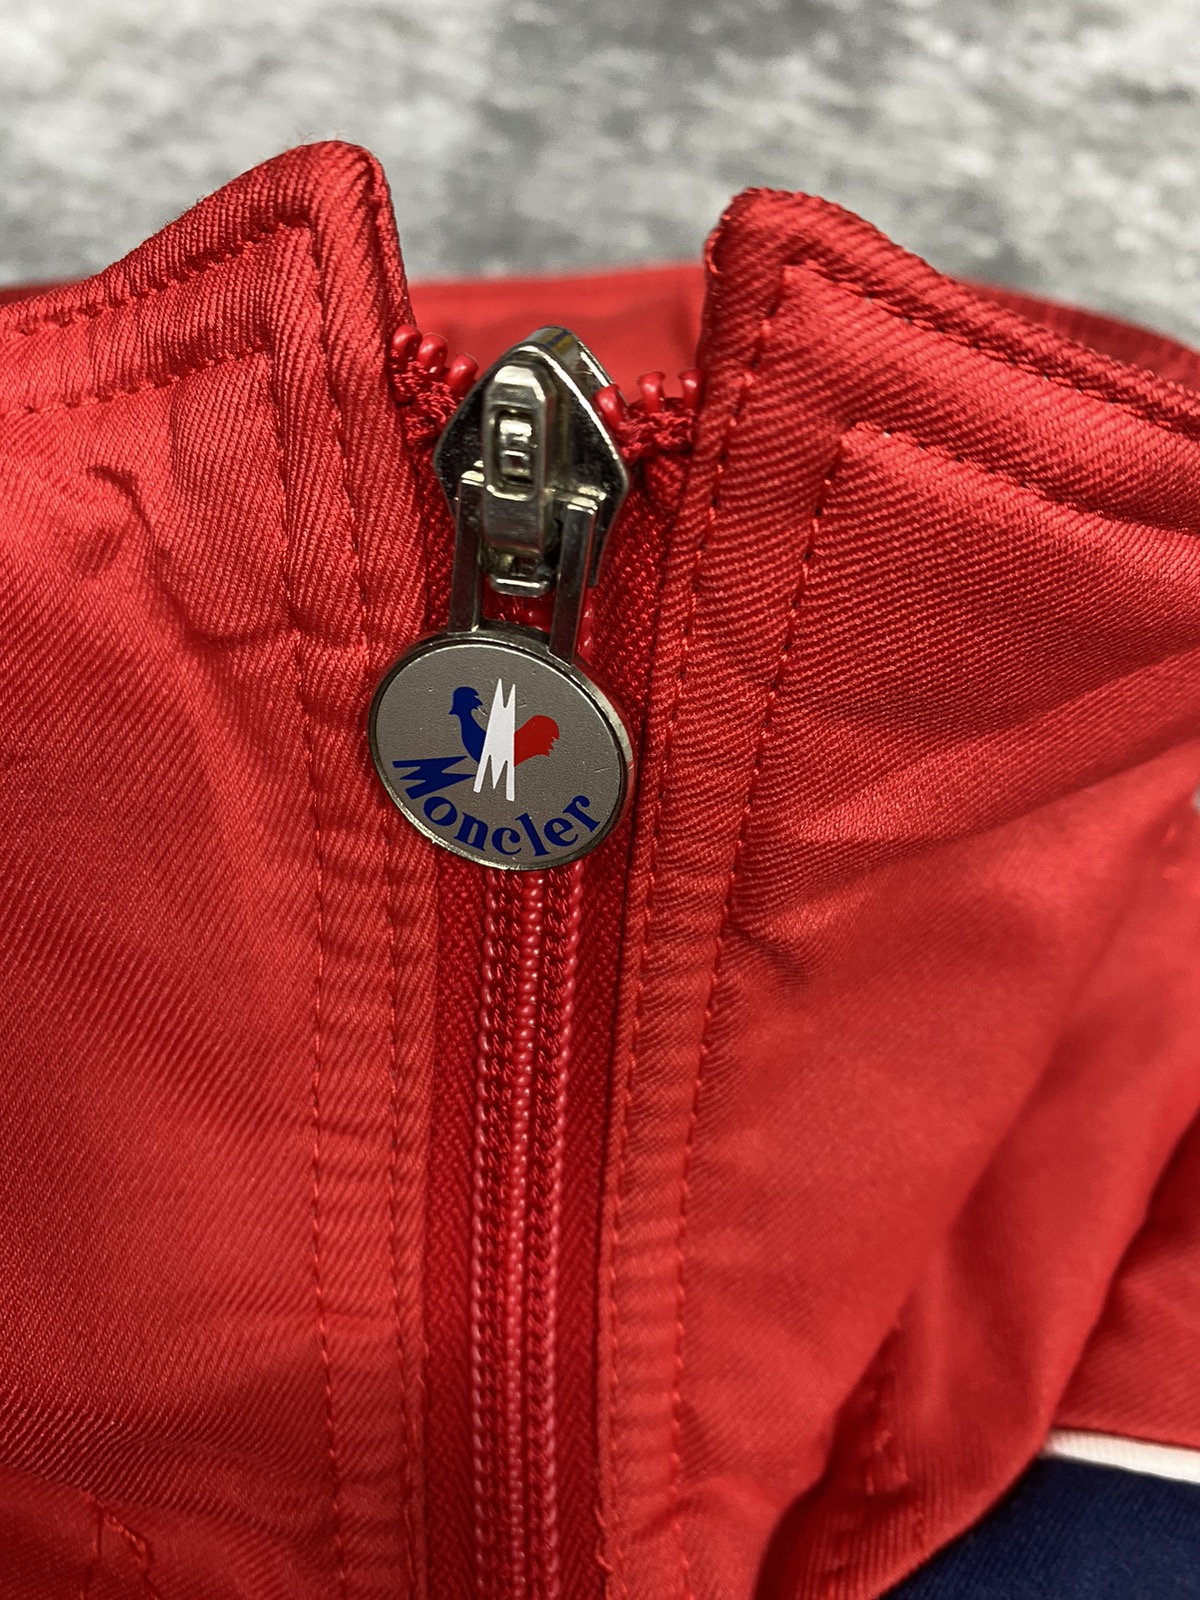 Vintage Moncler Jacket. J011 - 7